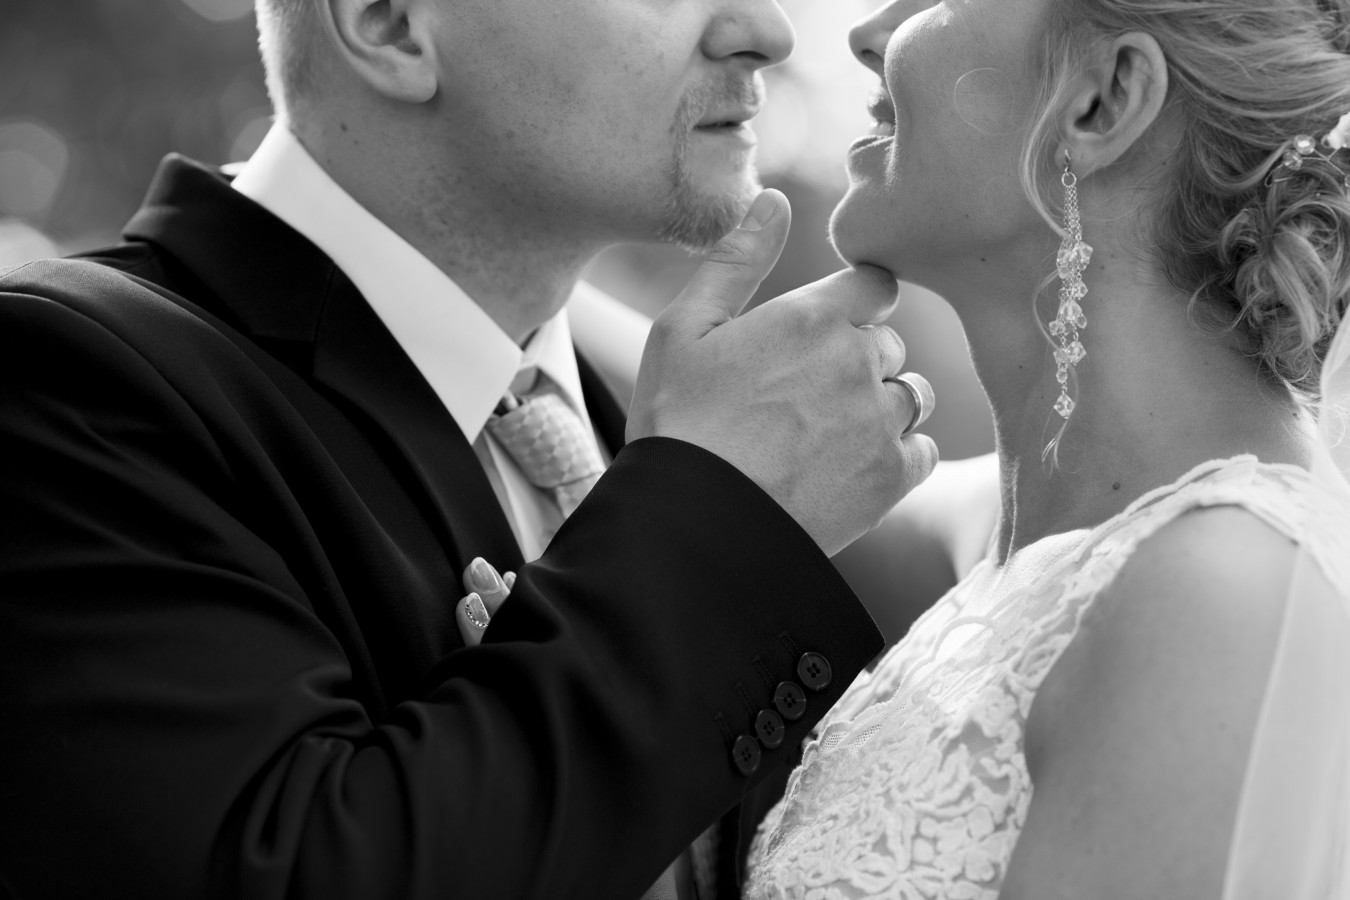 zdjęcia wroclaw fotograf follow-love portfolio zdjecia slubne inspiracje wesele plener slubny sesja slubna